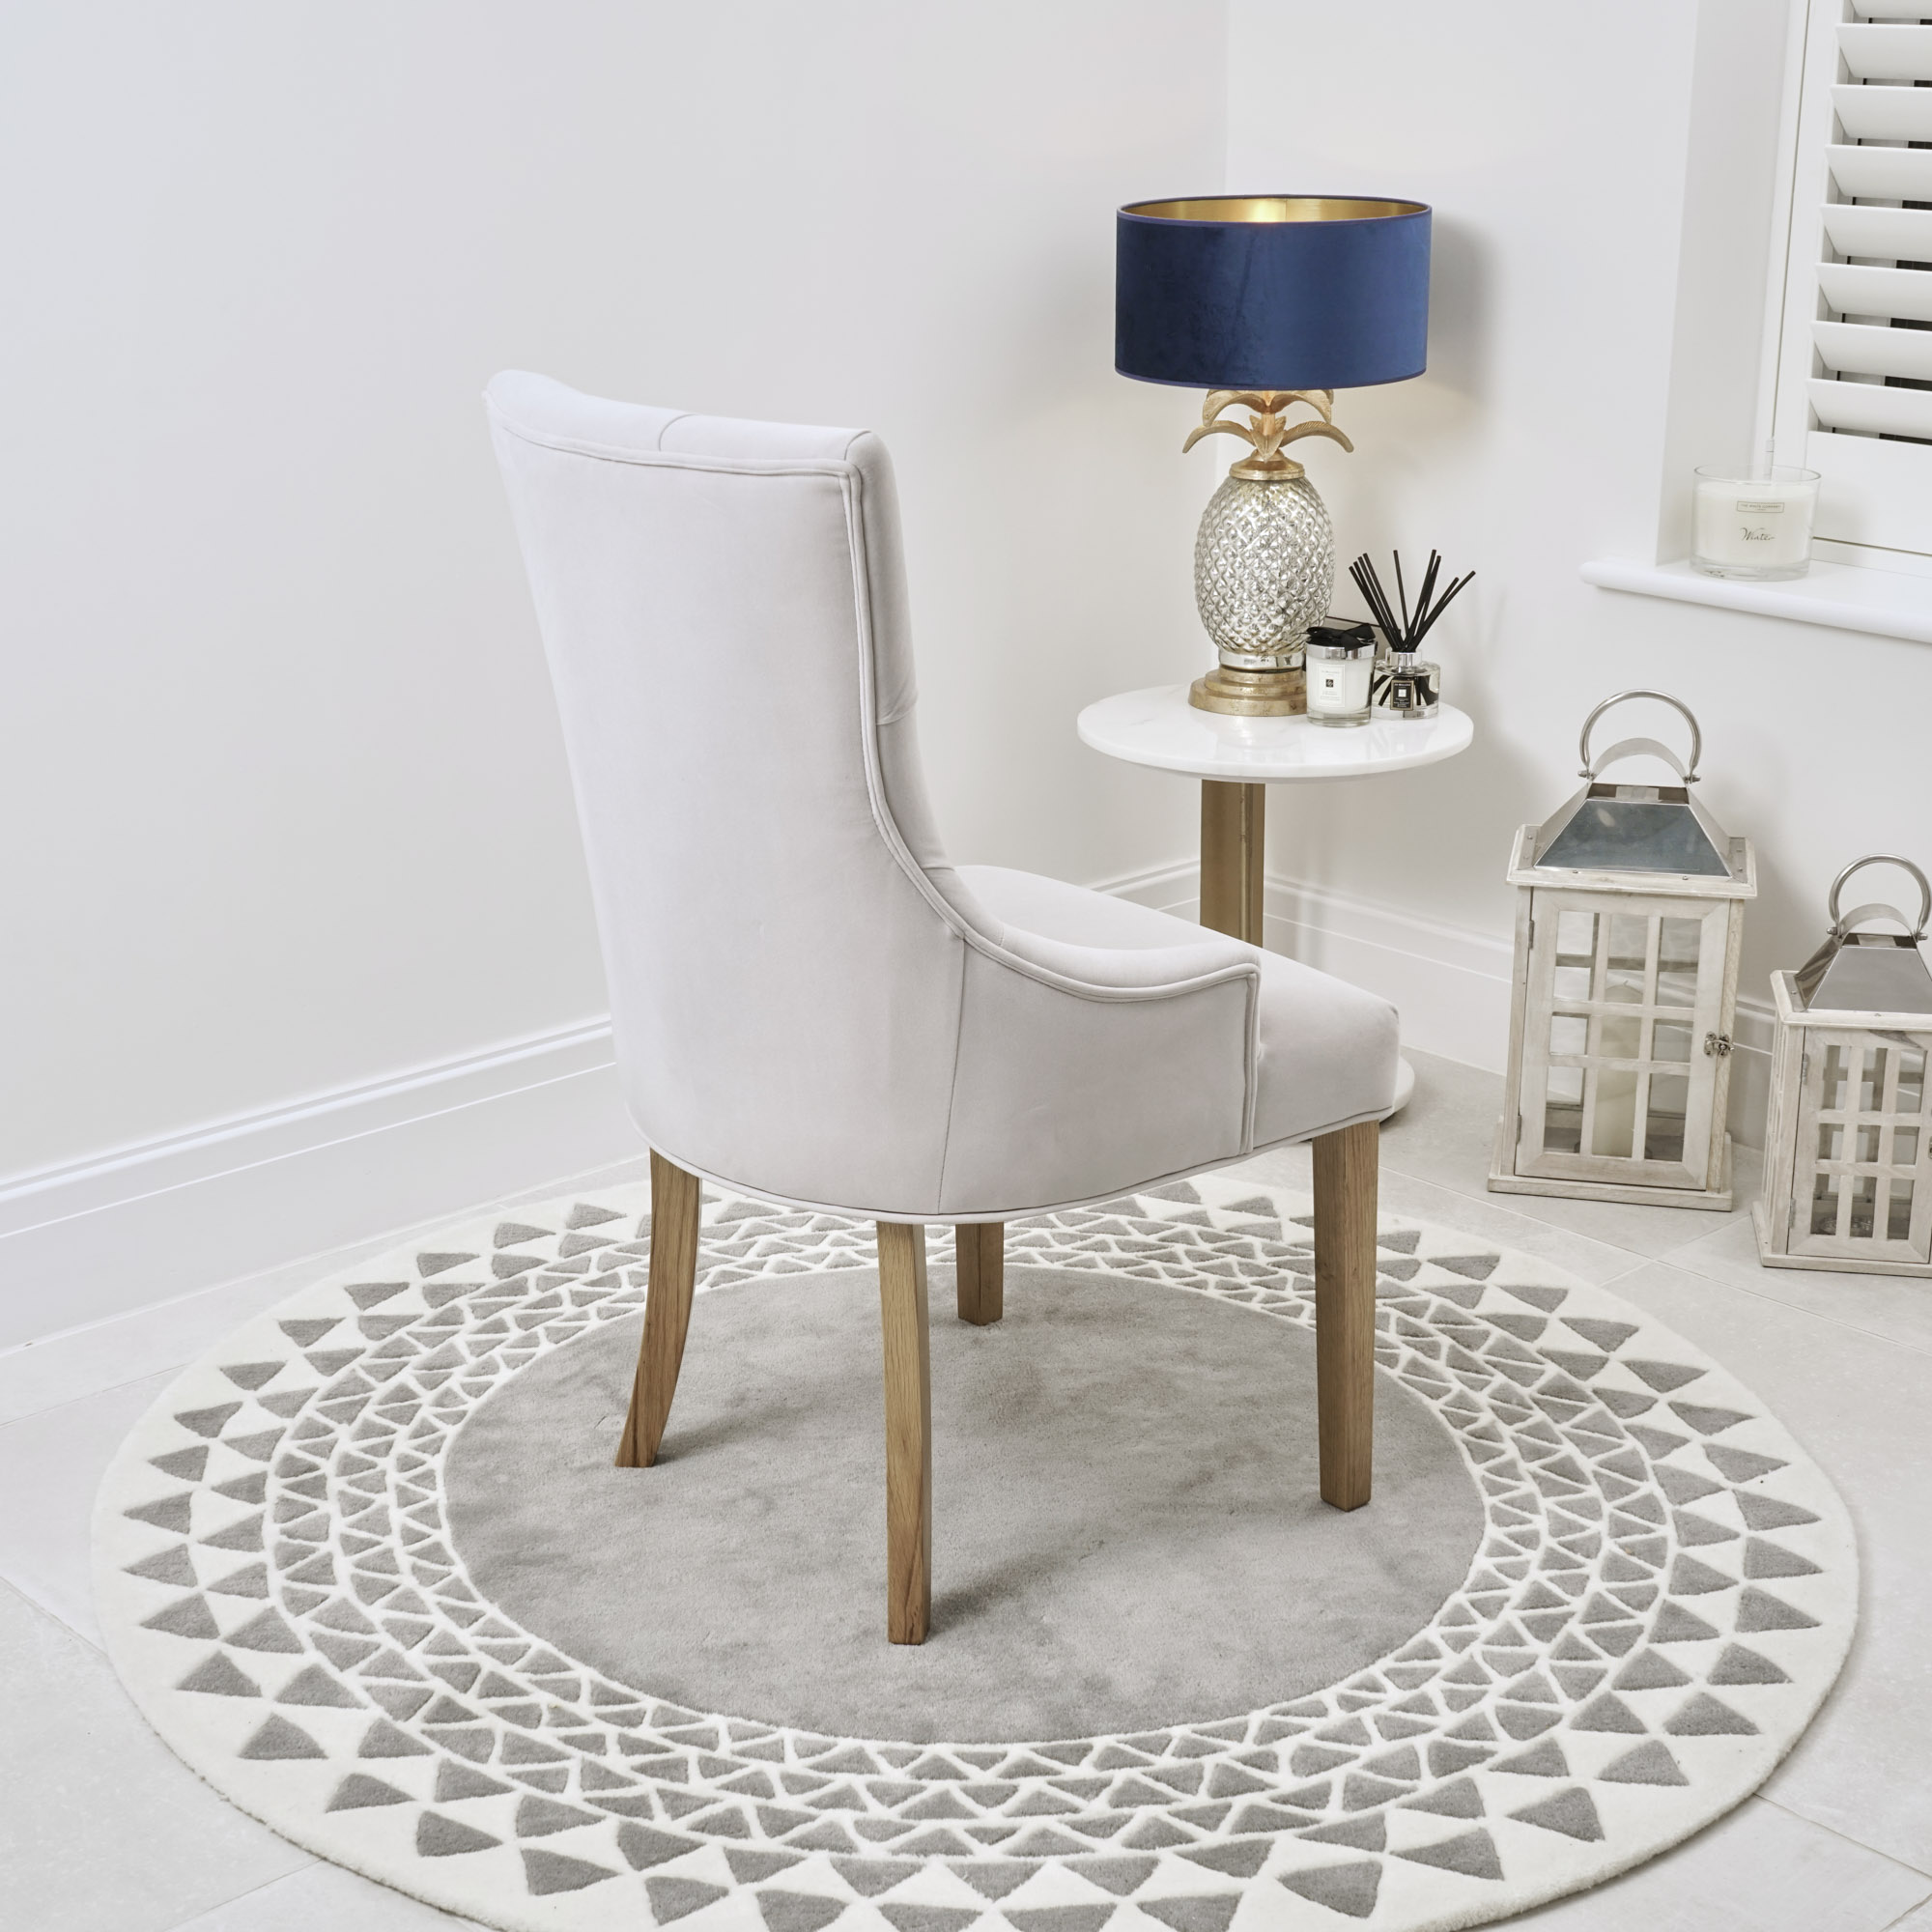 Truro Tiffany Light Grey  Velvet Upholstered Scoop Dining Chair – Oak Legs